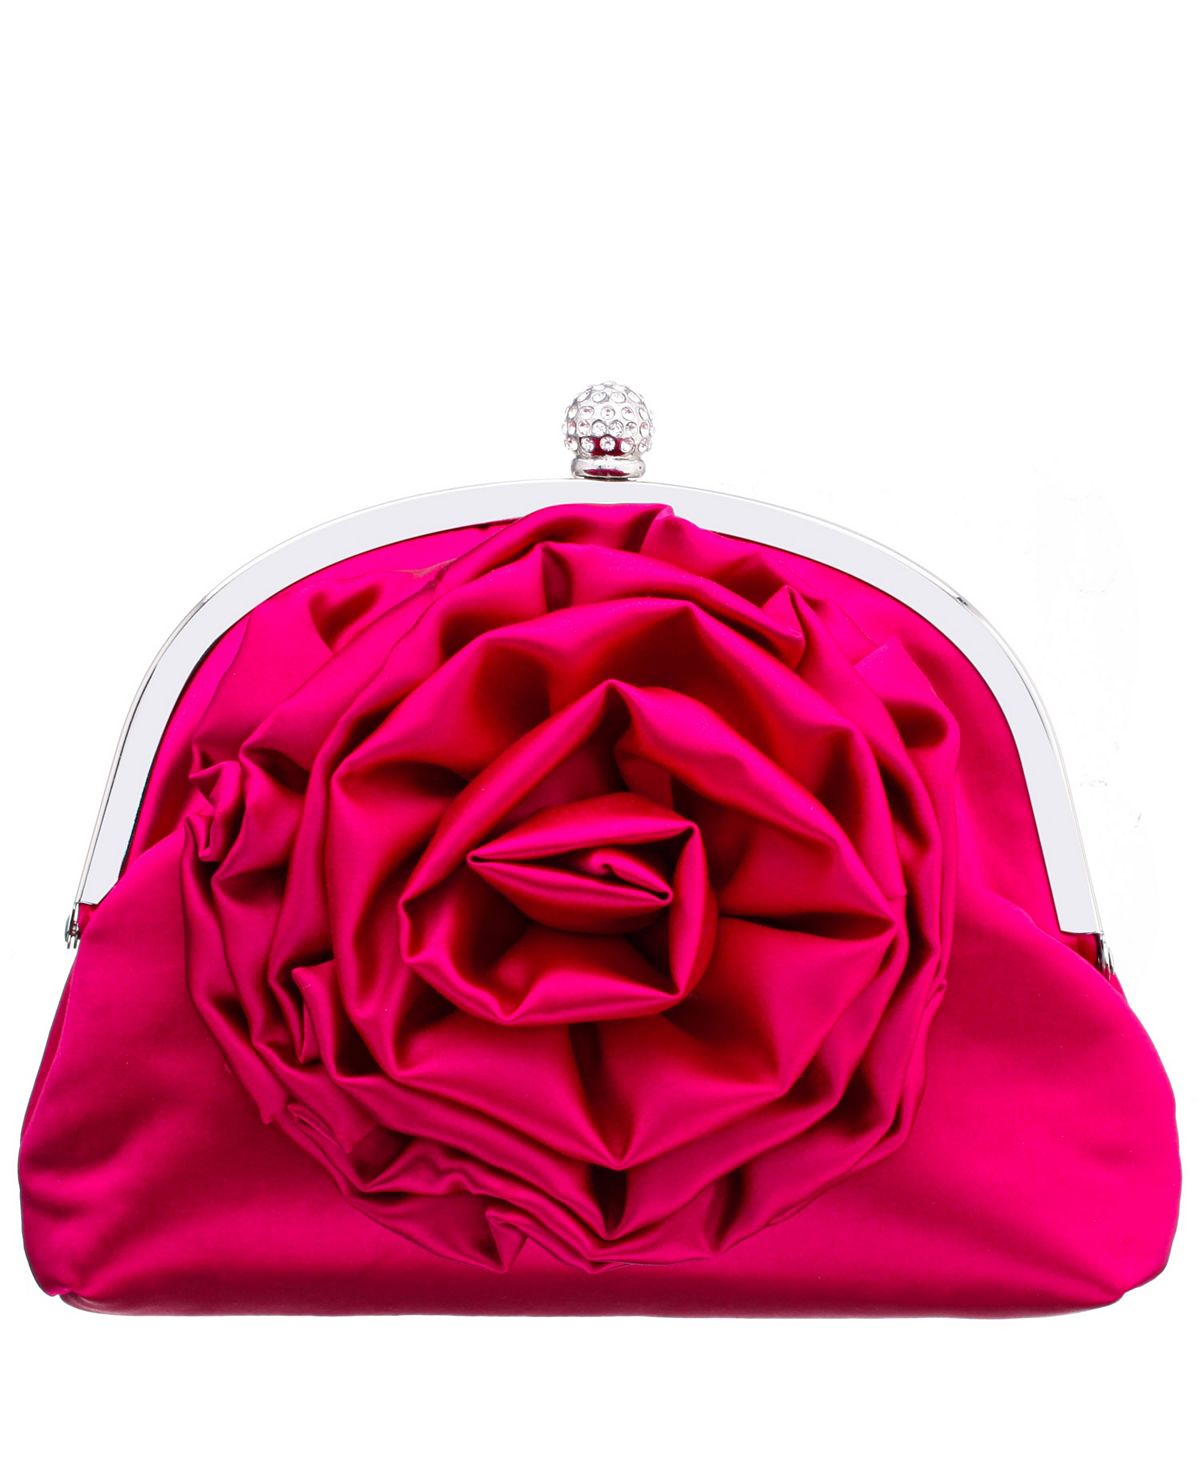 Клатч через плечо с цветочным декором и оправой Nina ирис сибирский pink parfait